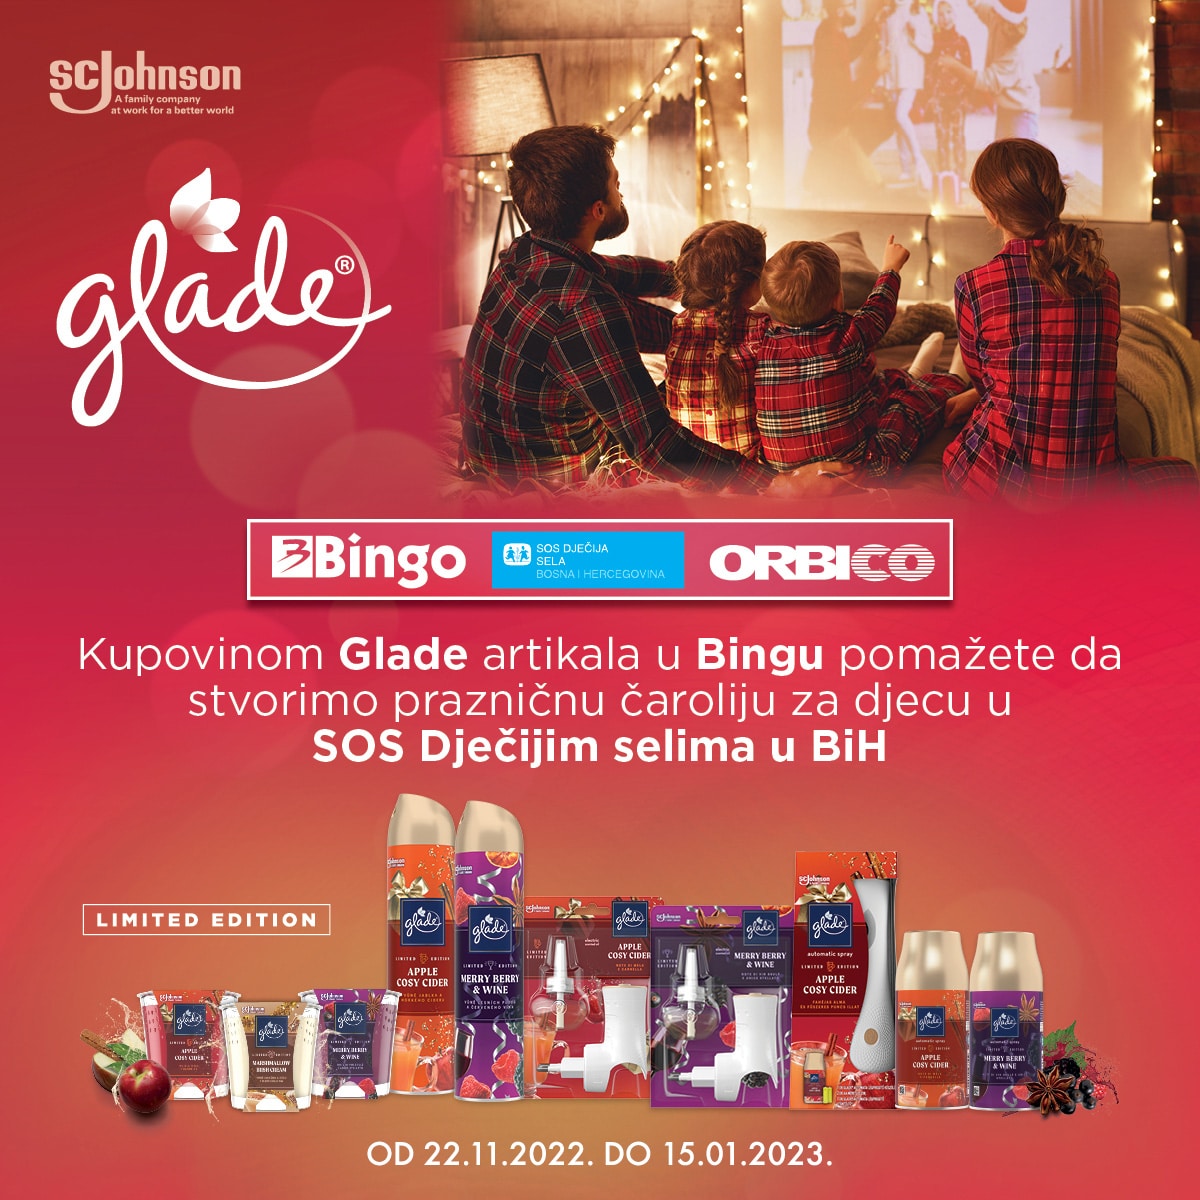 Kupovinom Glade Winter artikala u Bingu pomažete da zajedno ostvarimo prazničnu čaroliju za djecu u SOS Dječijim selima u BH